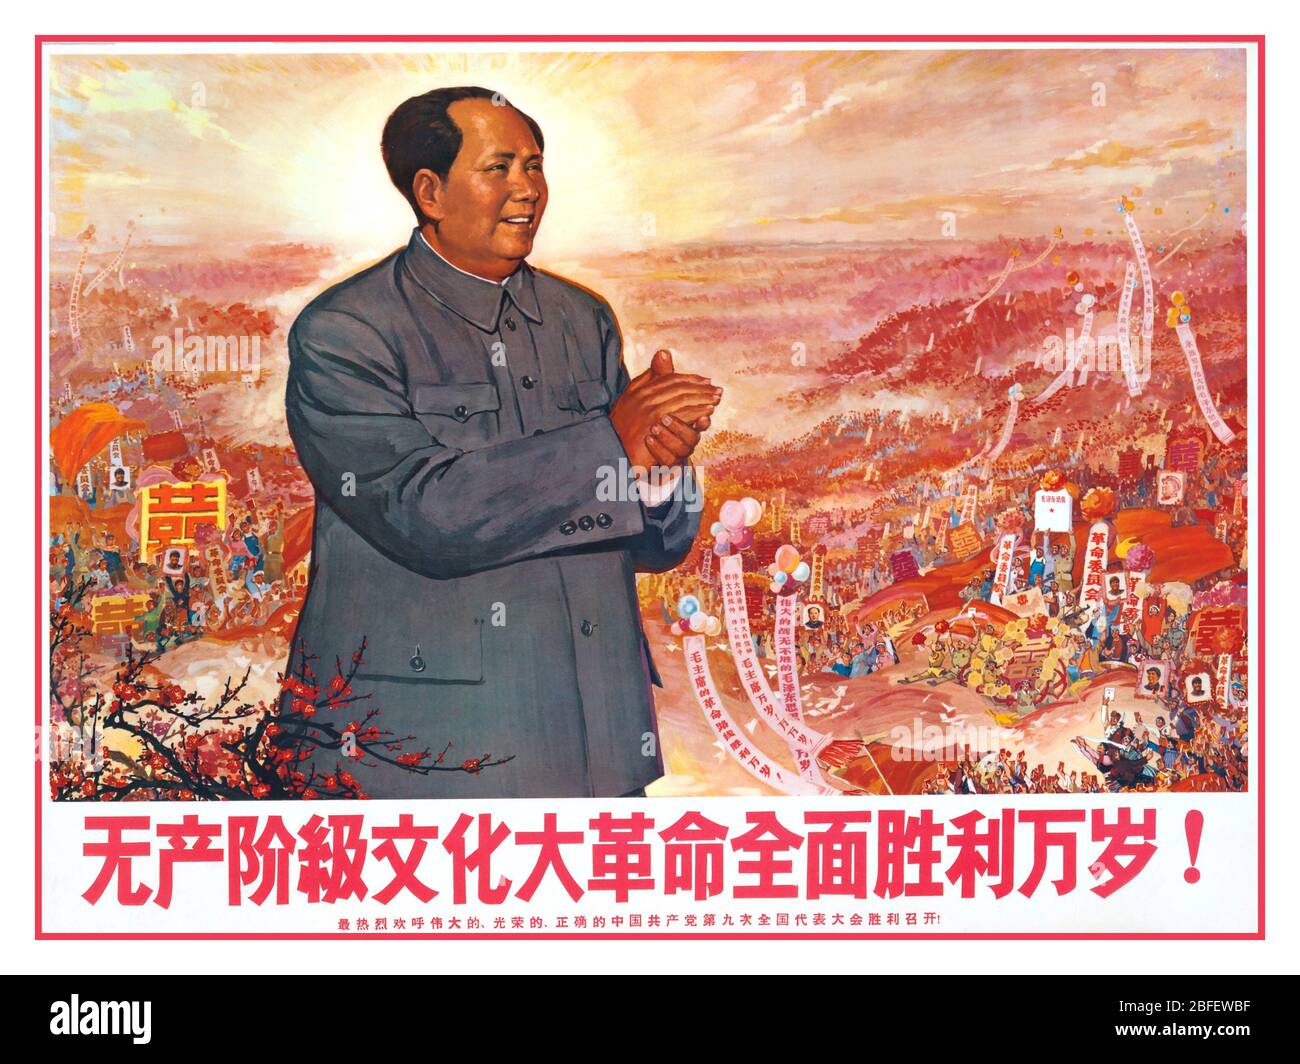 Chairman Mao Propaganda Poster Repubblica popolare Cinese (PRC), Rivoluzione Culturale Cina Cultura Storia Posters d'epoca Poster Propaganda Comunista illustrazioni Poster Chairman Mao Chinese Cultural Revolution Poster anni '50 Foto Stock